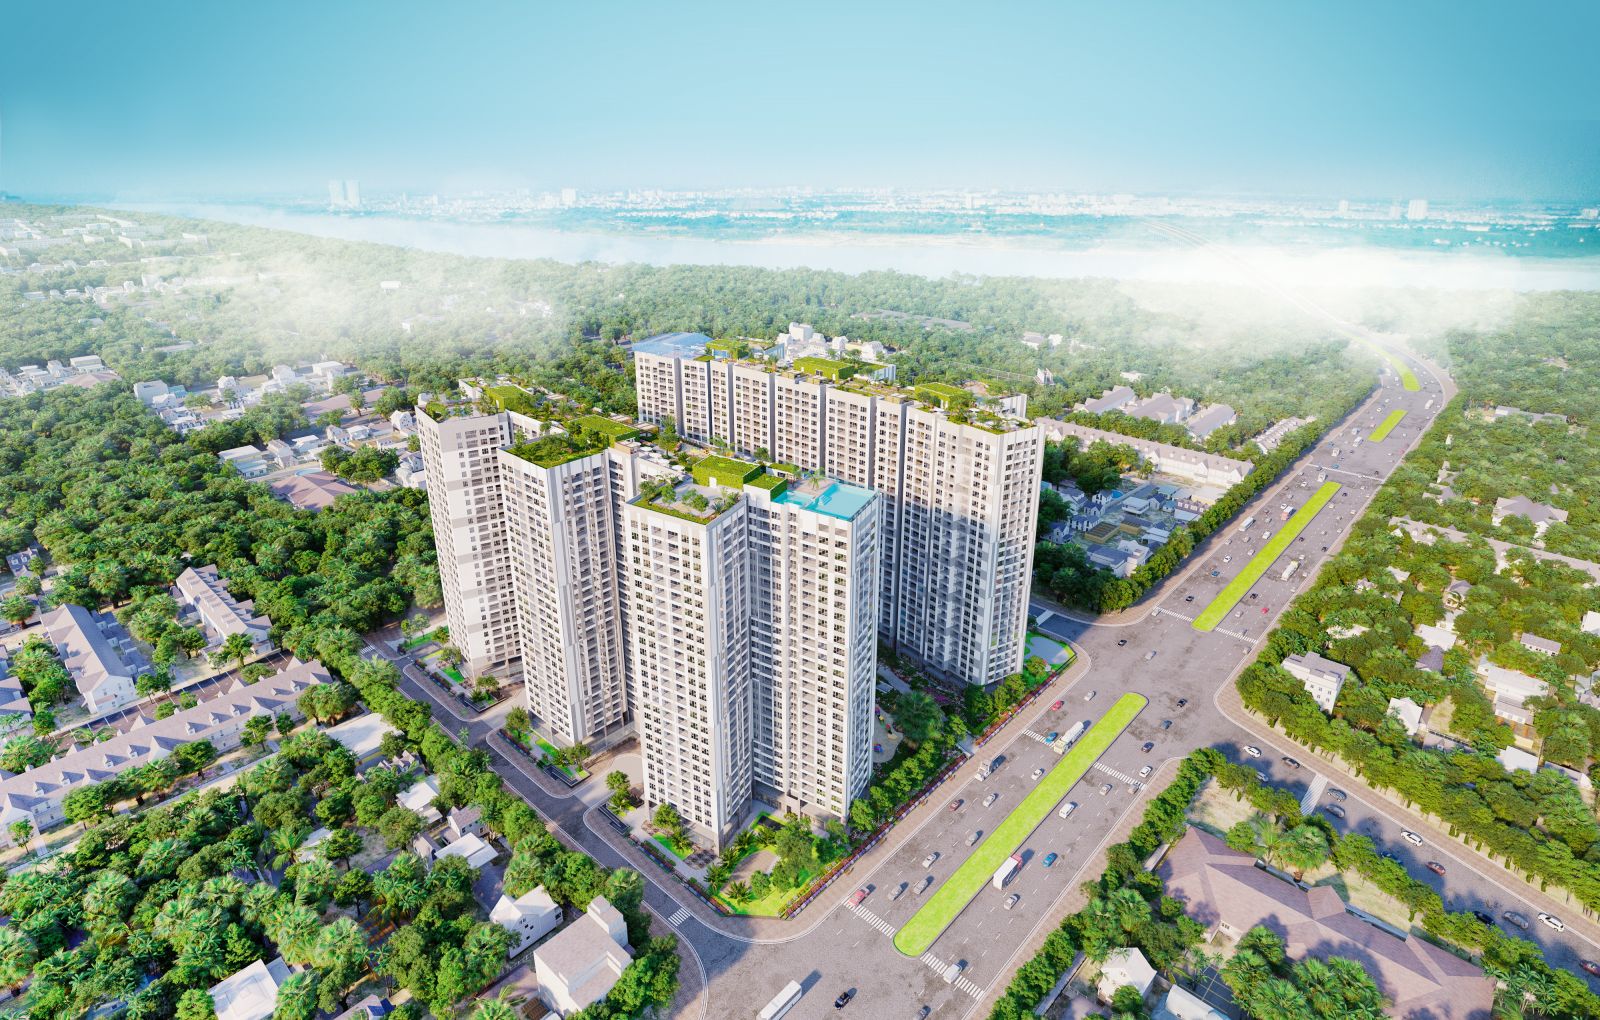 Mách bạn 1001 lý do nên đầu tư mua bán nhà đất vào dự án Long Thành Pearl Đồng Nai – “viên ngọc quý” giữa lòng thành phố.